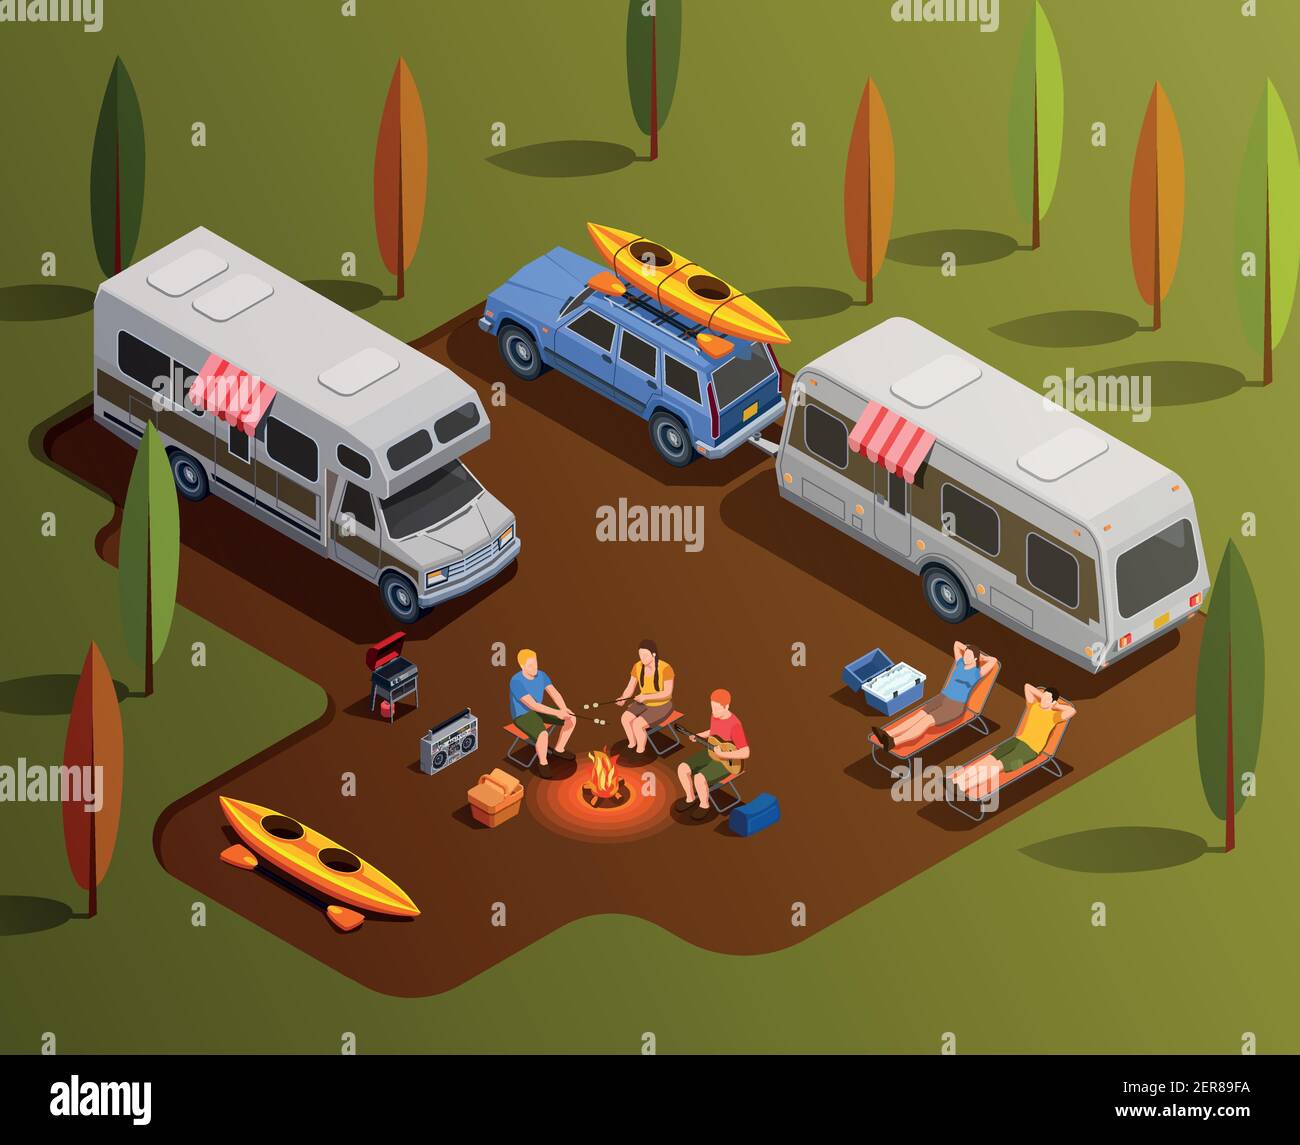 Camping senderismo iconos isométricos composición con caravana trailers pala barcos y personajes humanos con ilustración vectorial de fogatas Ilustración del Vector